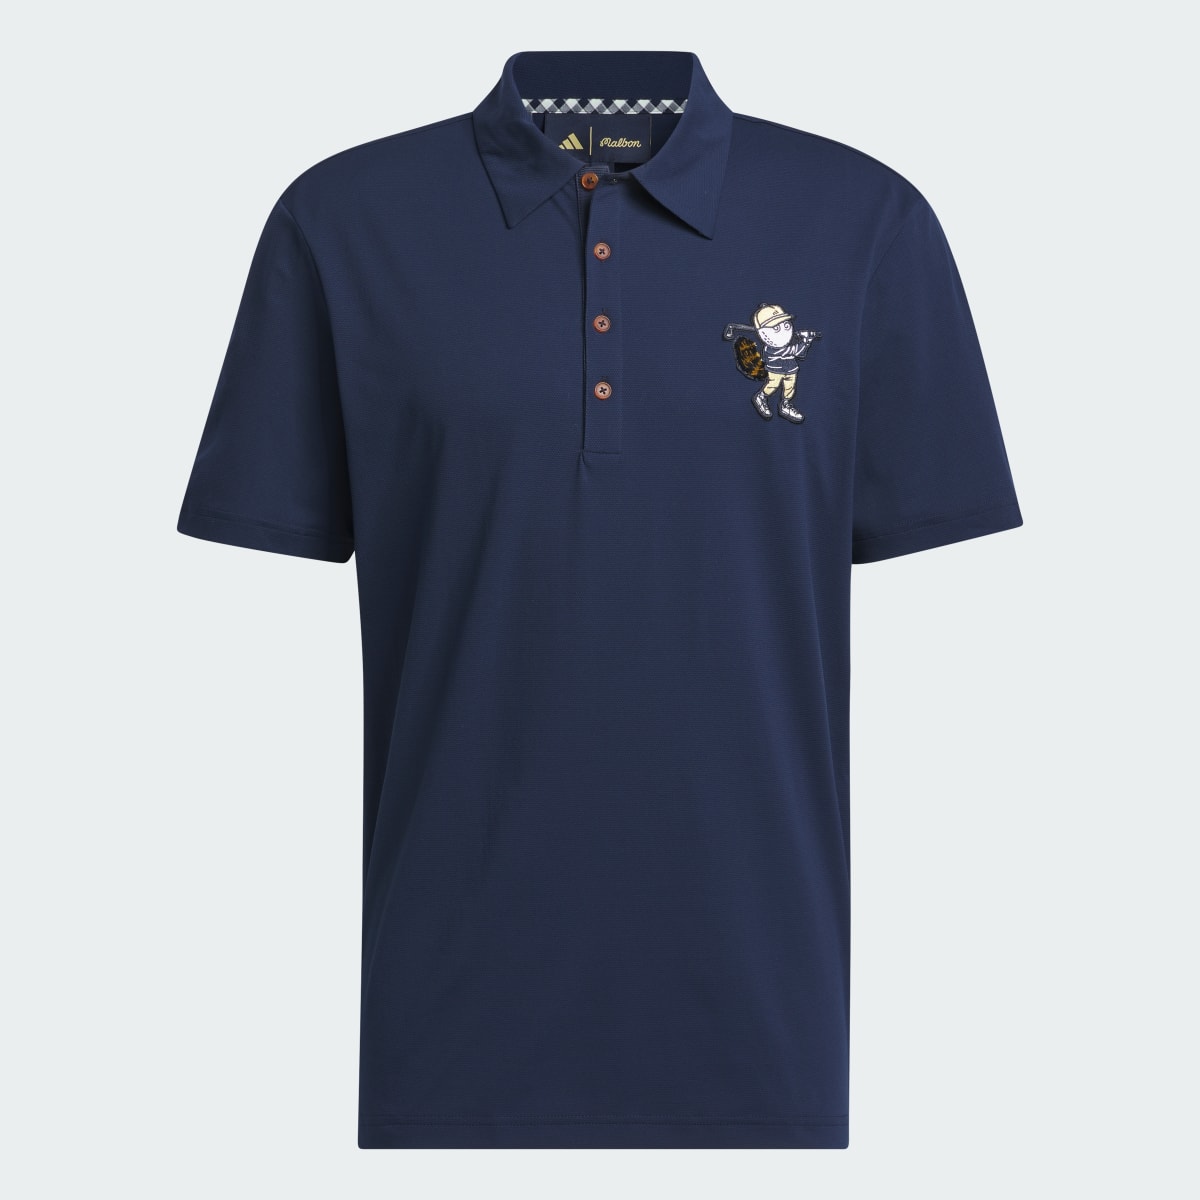 Adidas Koszulka Malbon Polo. 7